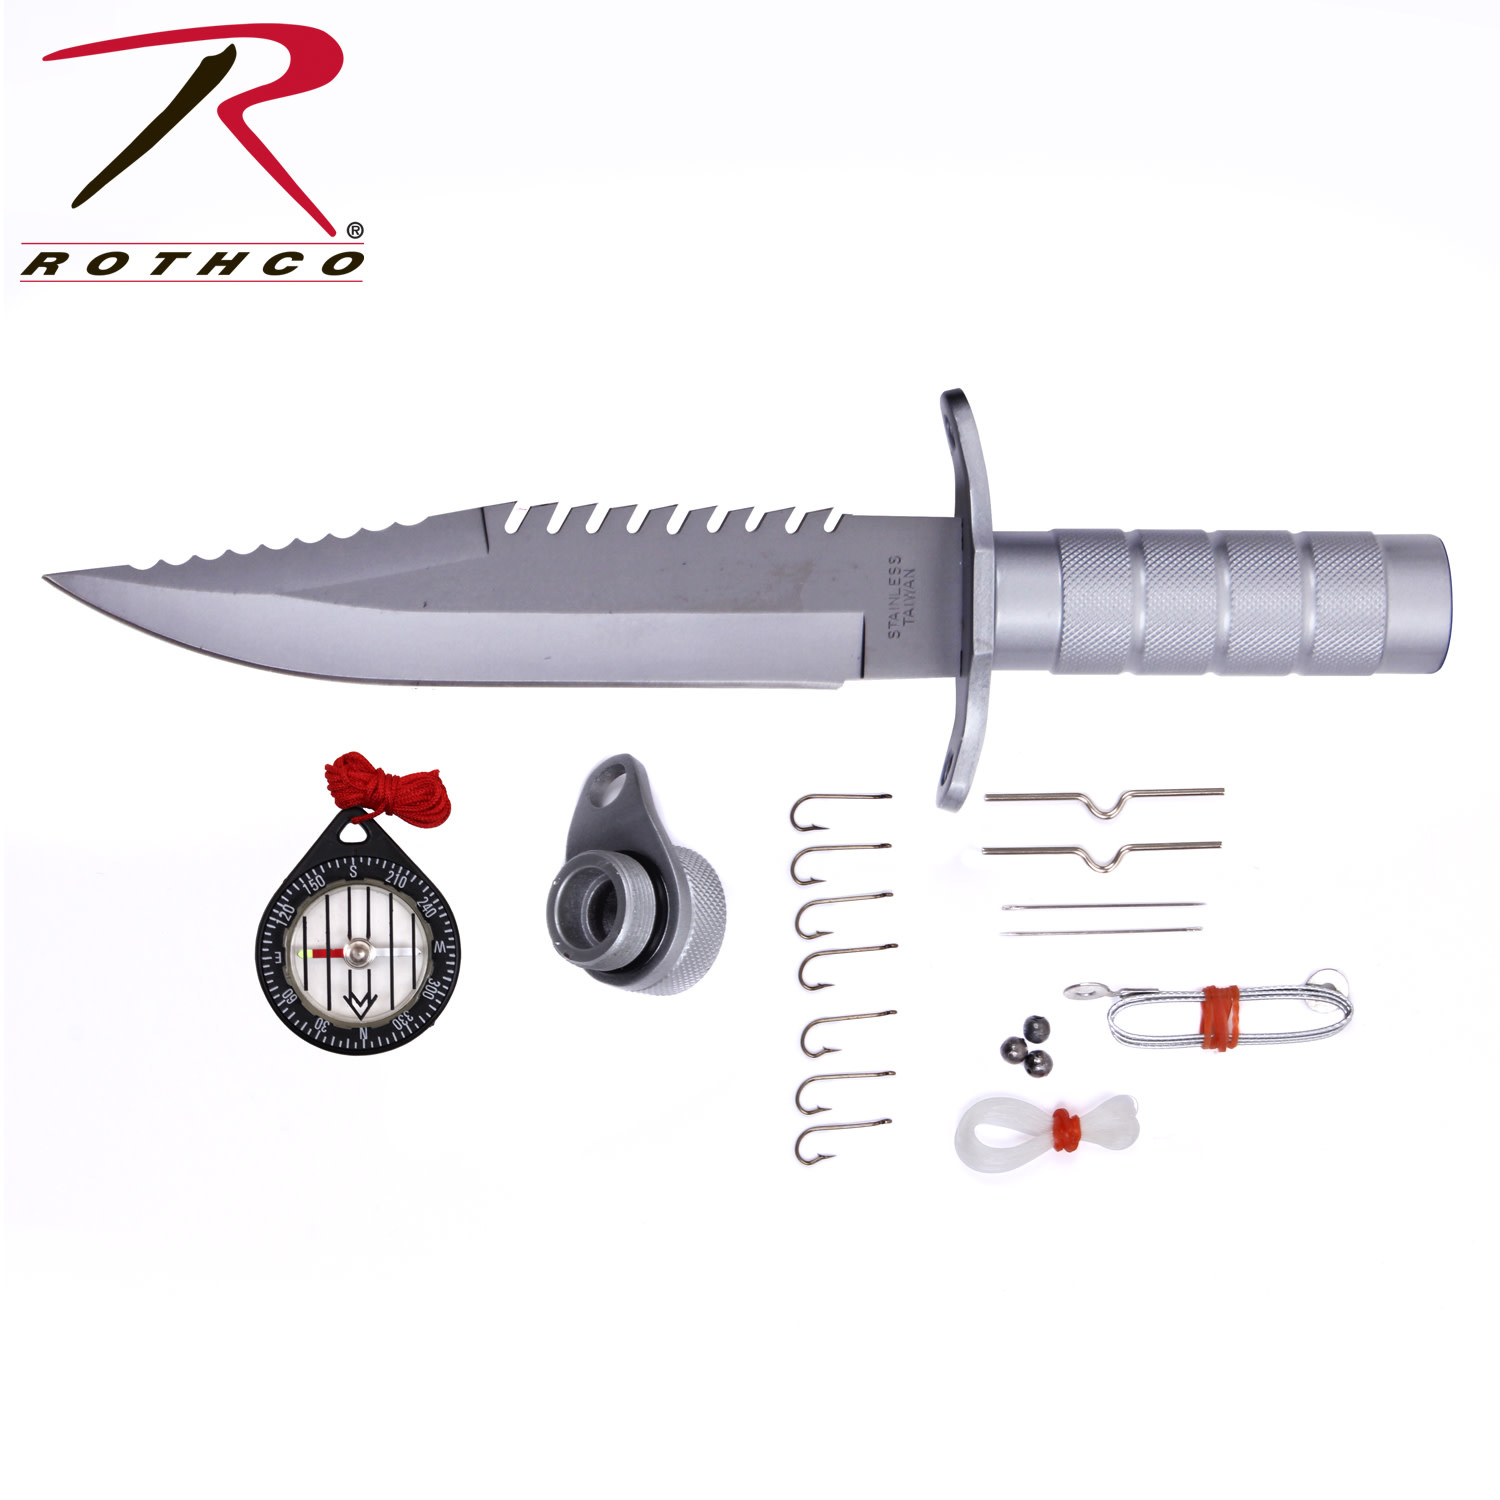 https://cdn.shoplightspeed.com/shops/622077/files/27323195/rothco-ramster-survival-kit-knife.jpg